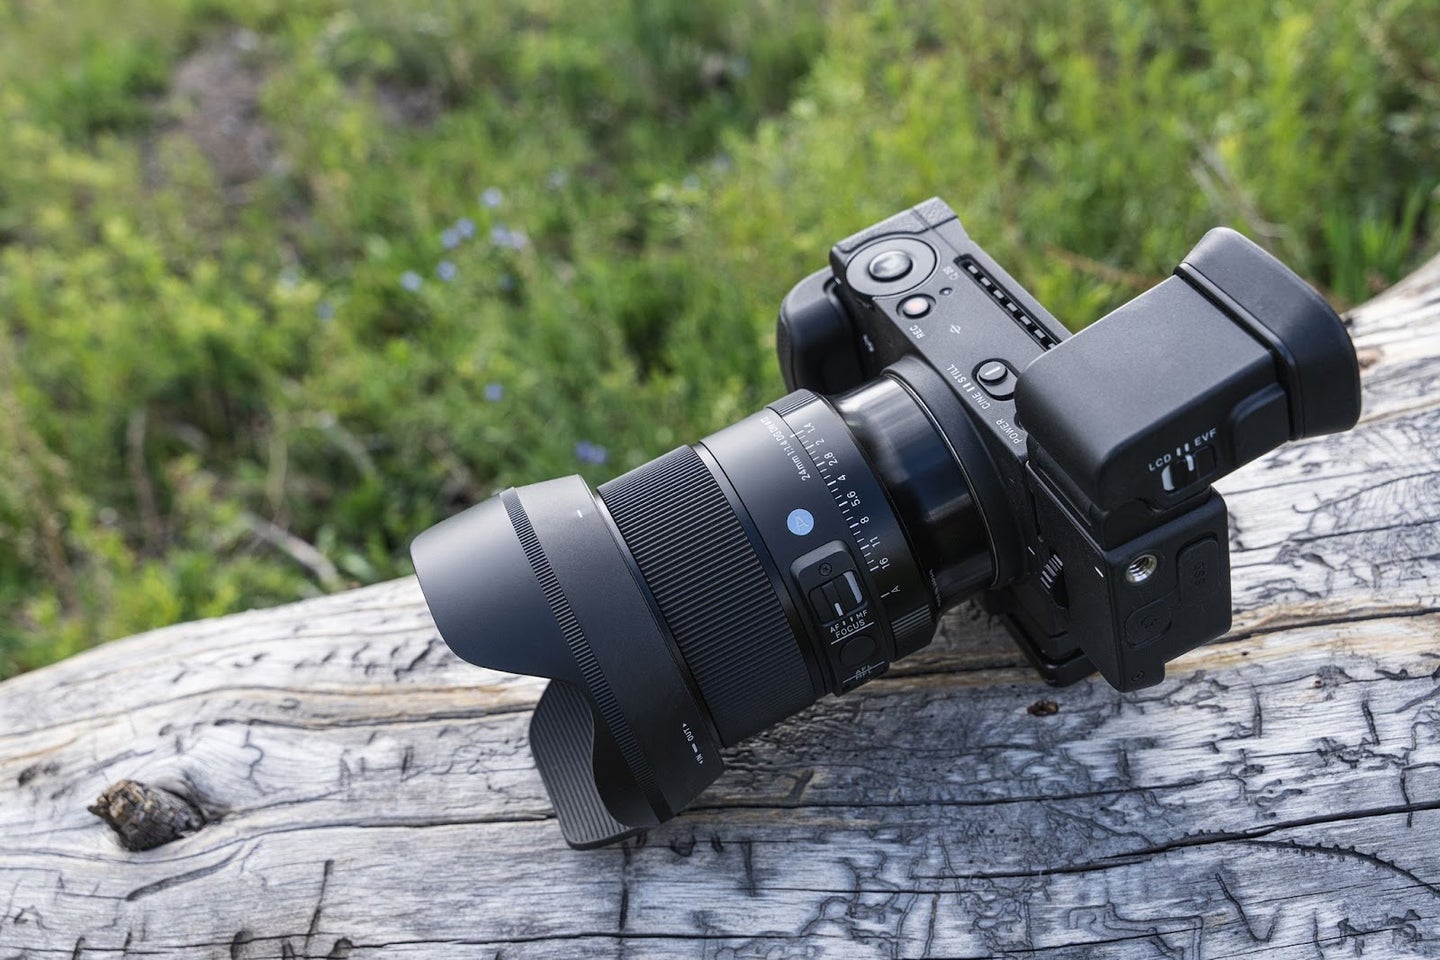 The new Sigma 24mm f/1.4 full-frame lens